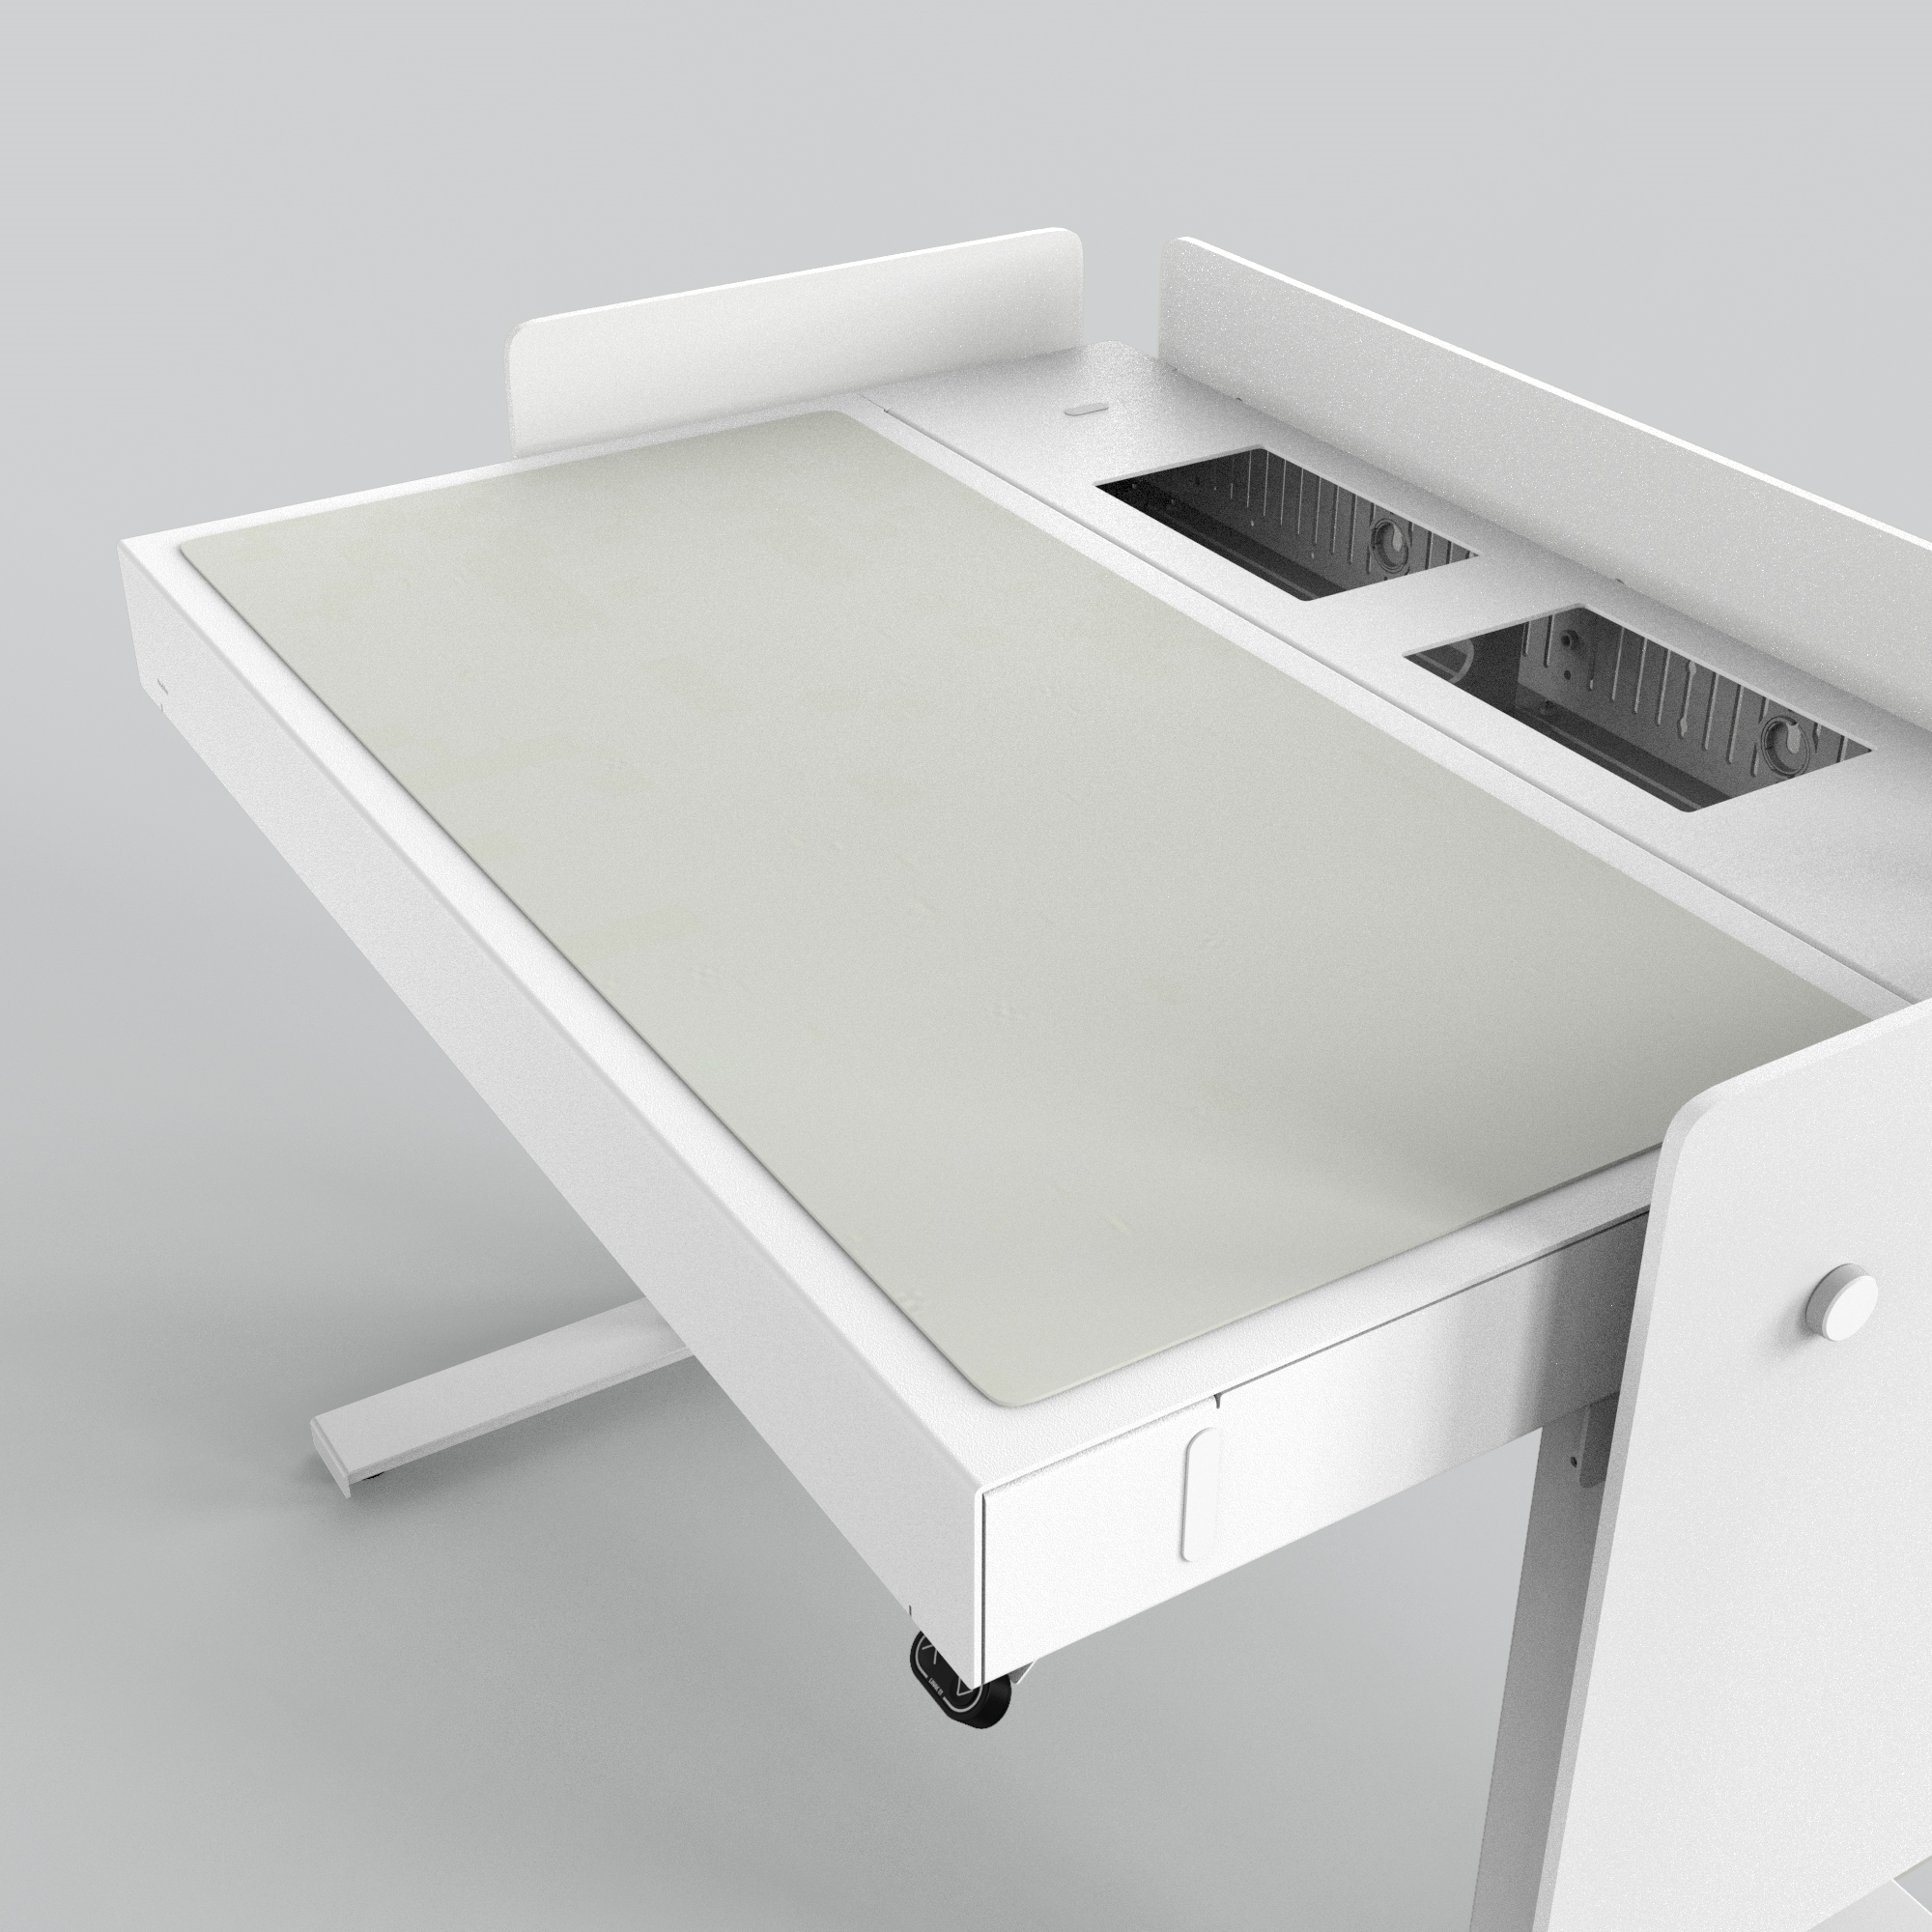 H922-4117 4U Deskpad - Vapour